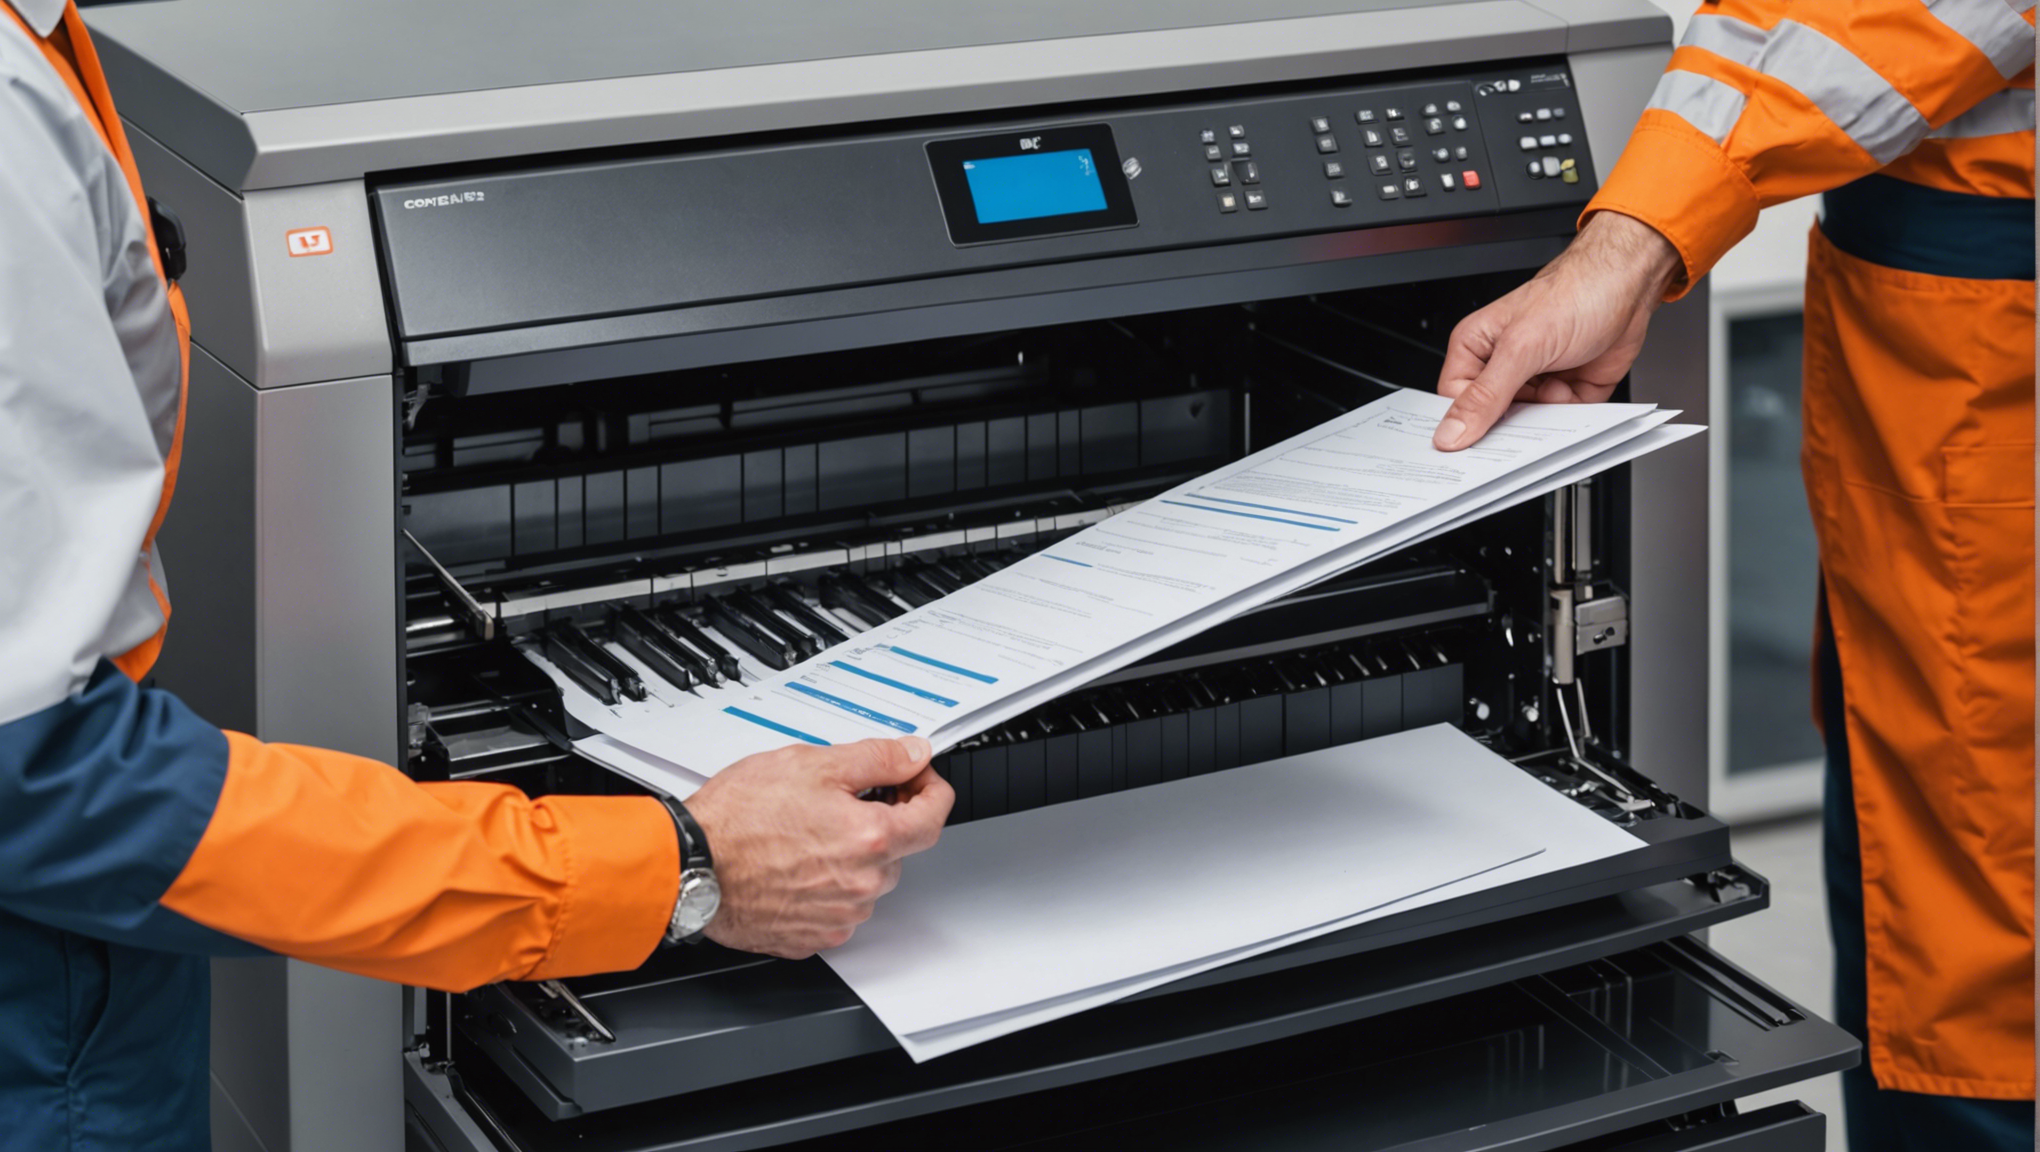 découvrez notre gamme d'imprimantes professionnelles à prix abordables et profitez de contrats de maintenance avantageux.